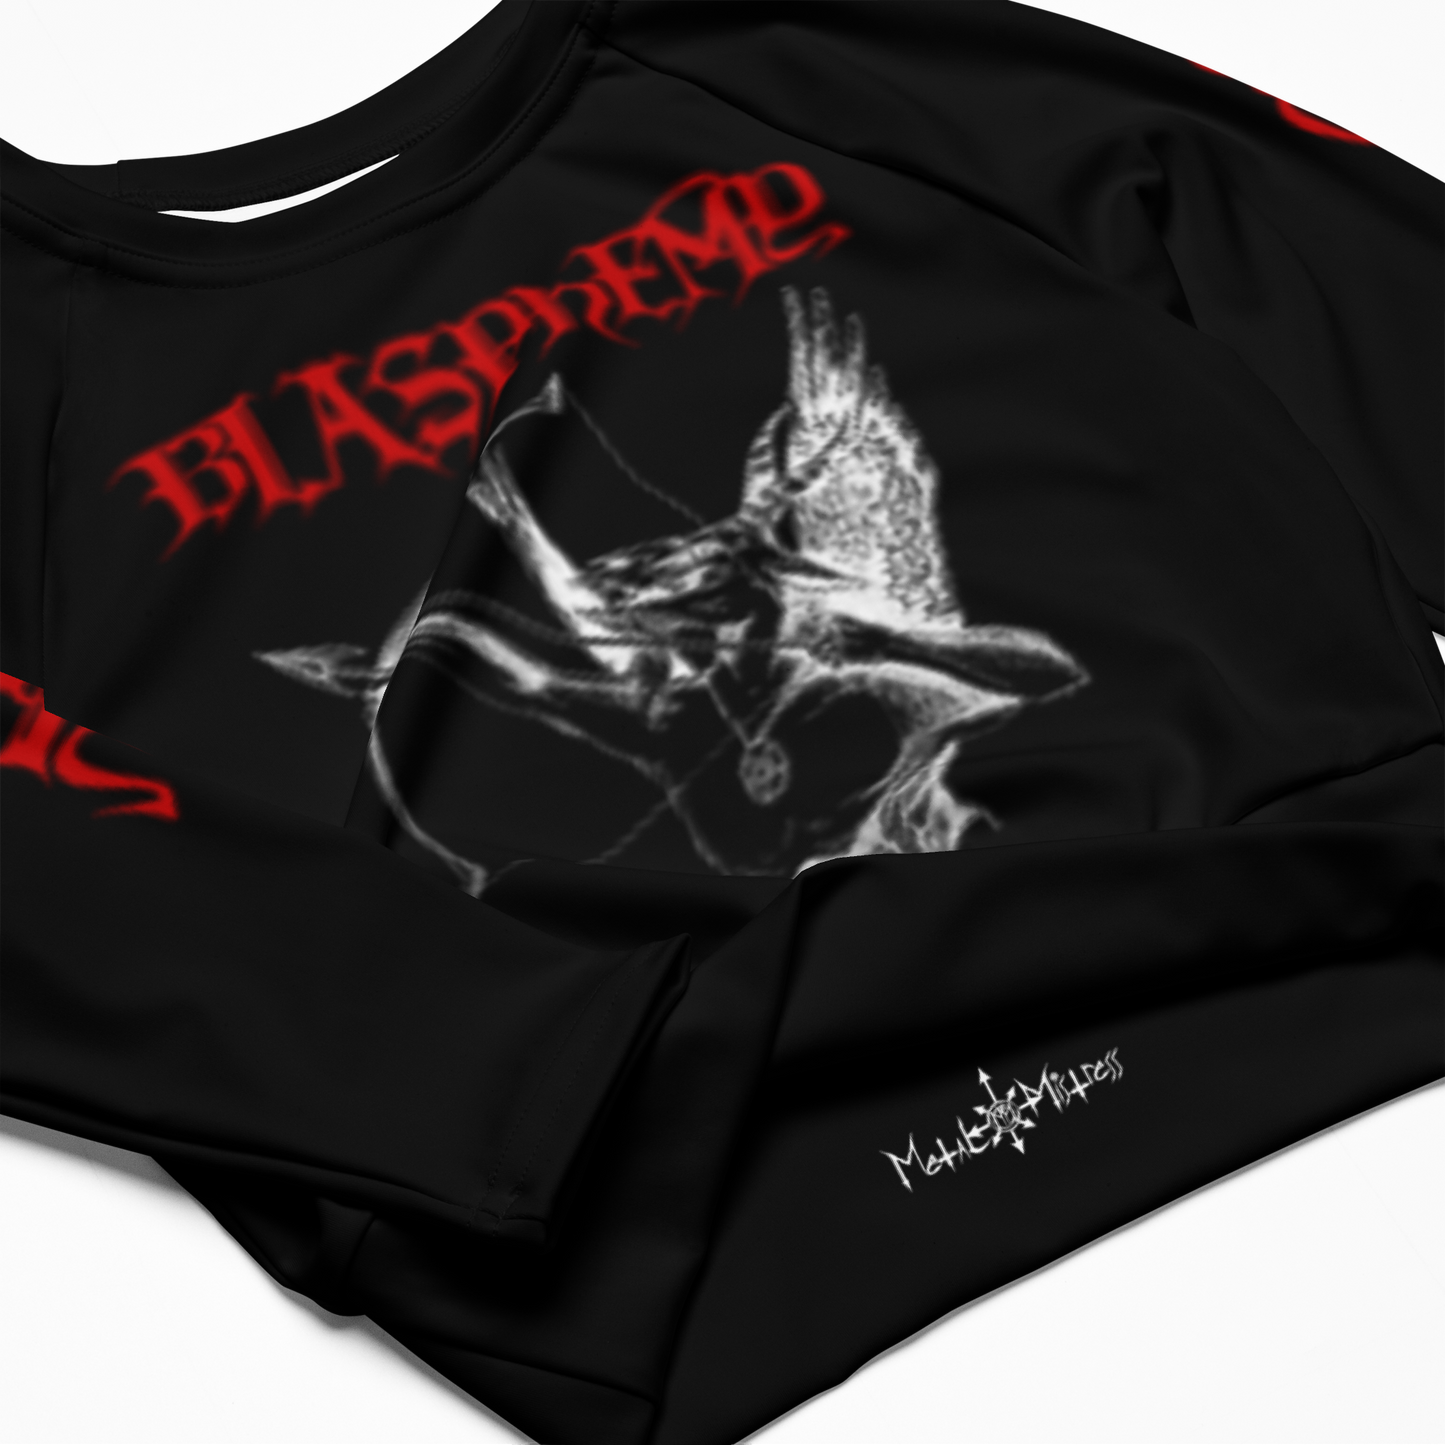 Blasphemy Fallen Angel of Doom black metal death metal long sleeve crop top